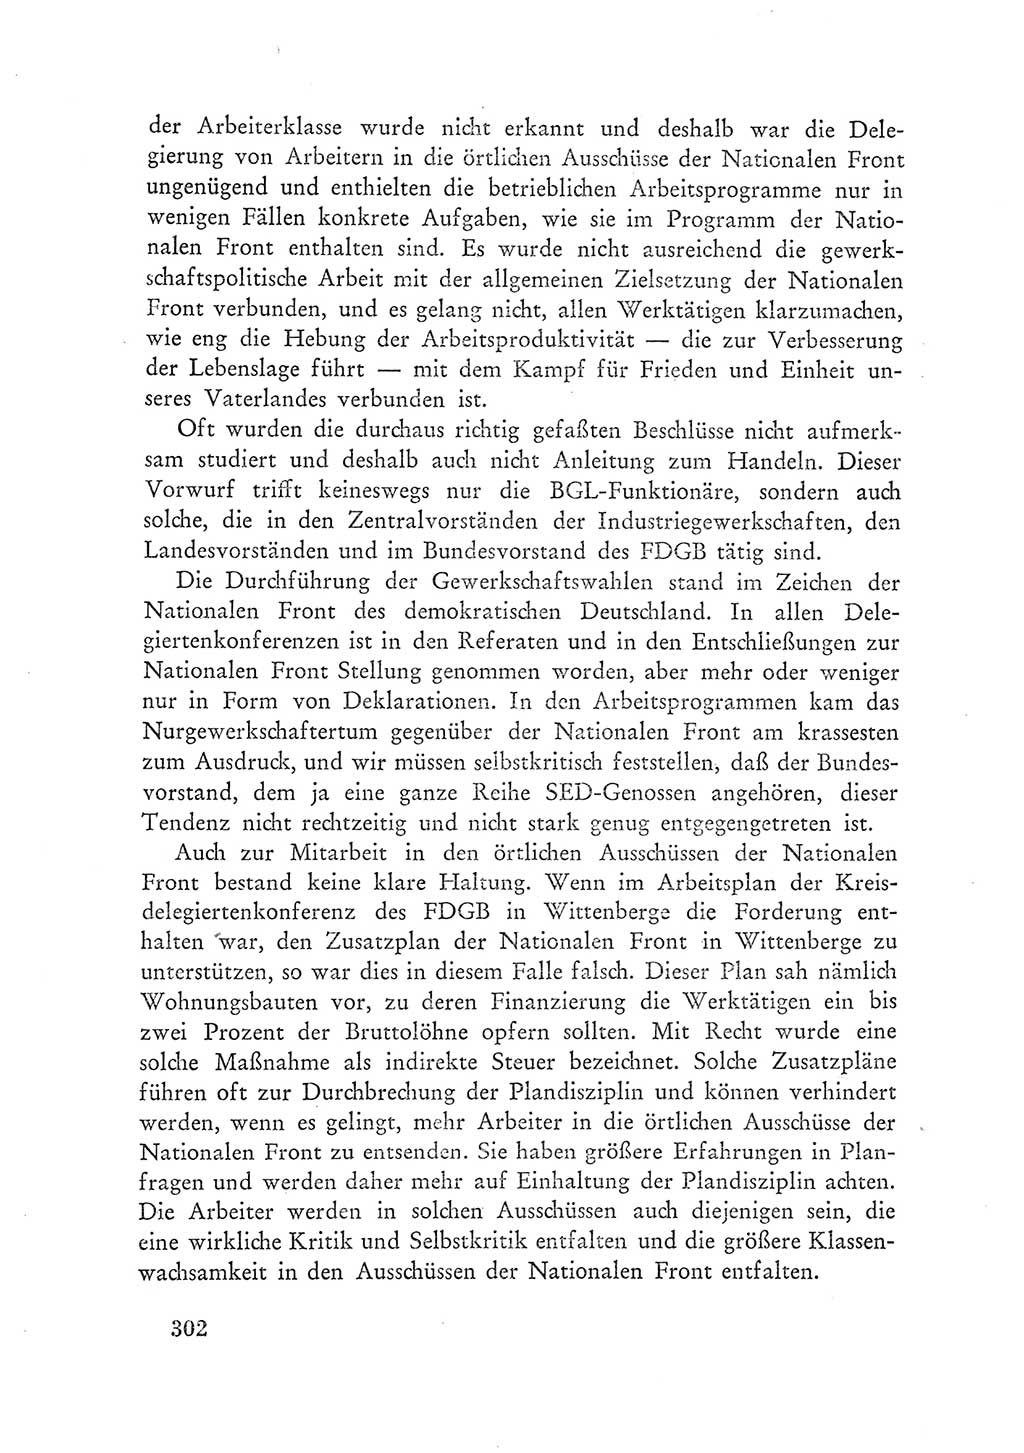 Protokoll der Verhandlungen des Ⅲ. Parteitages der Sozialistischen Einheitspartei Deutschlands (SED) [Deutsche Demokratische Republik (DDR)] 1950, Band 1, Seite 302 (Prot. Verh. Ⅲ. PT SED DDR 1950, Bd. 1, S. 302)